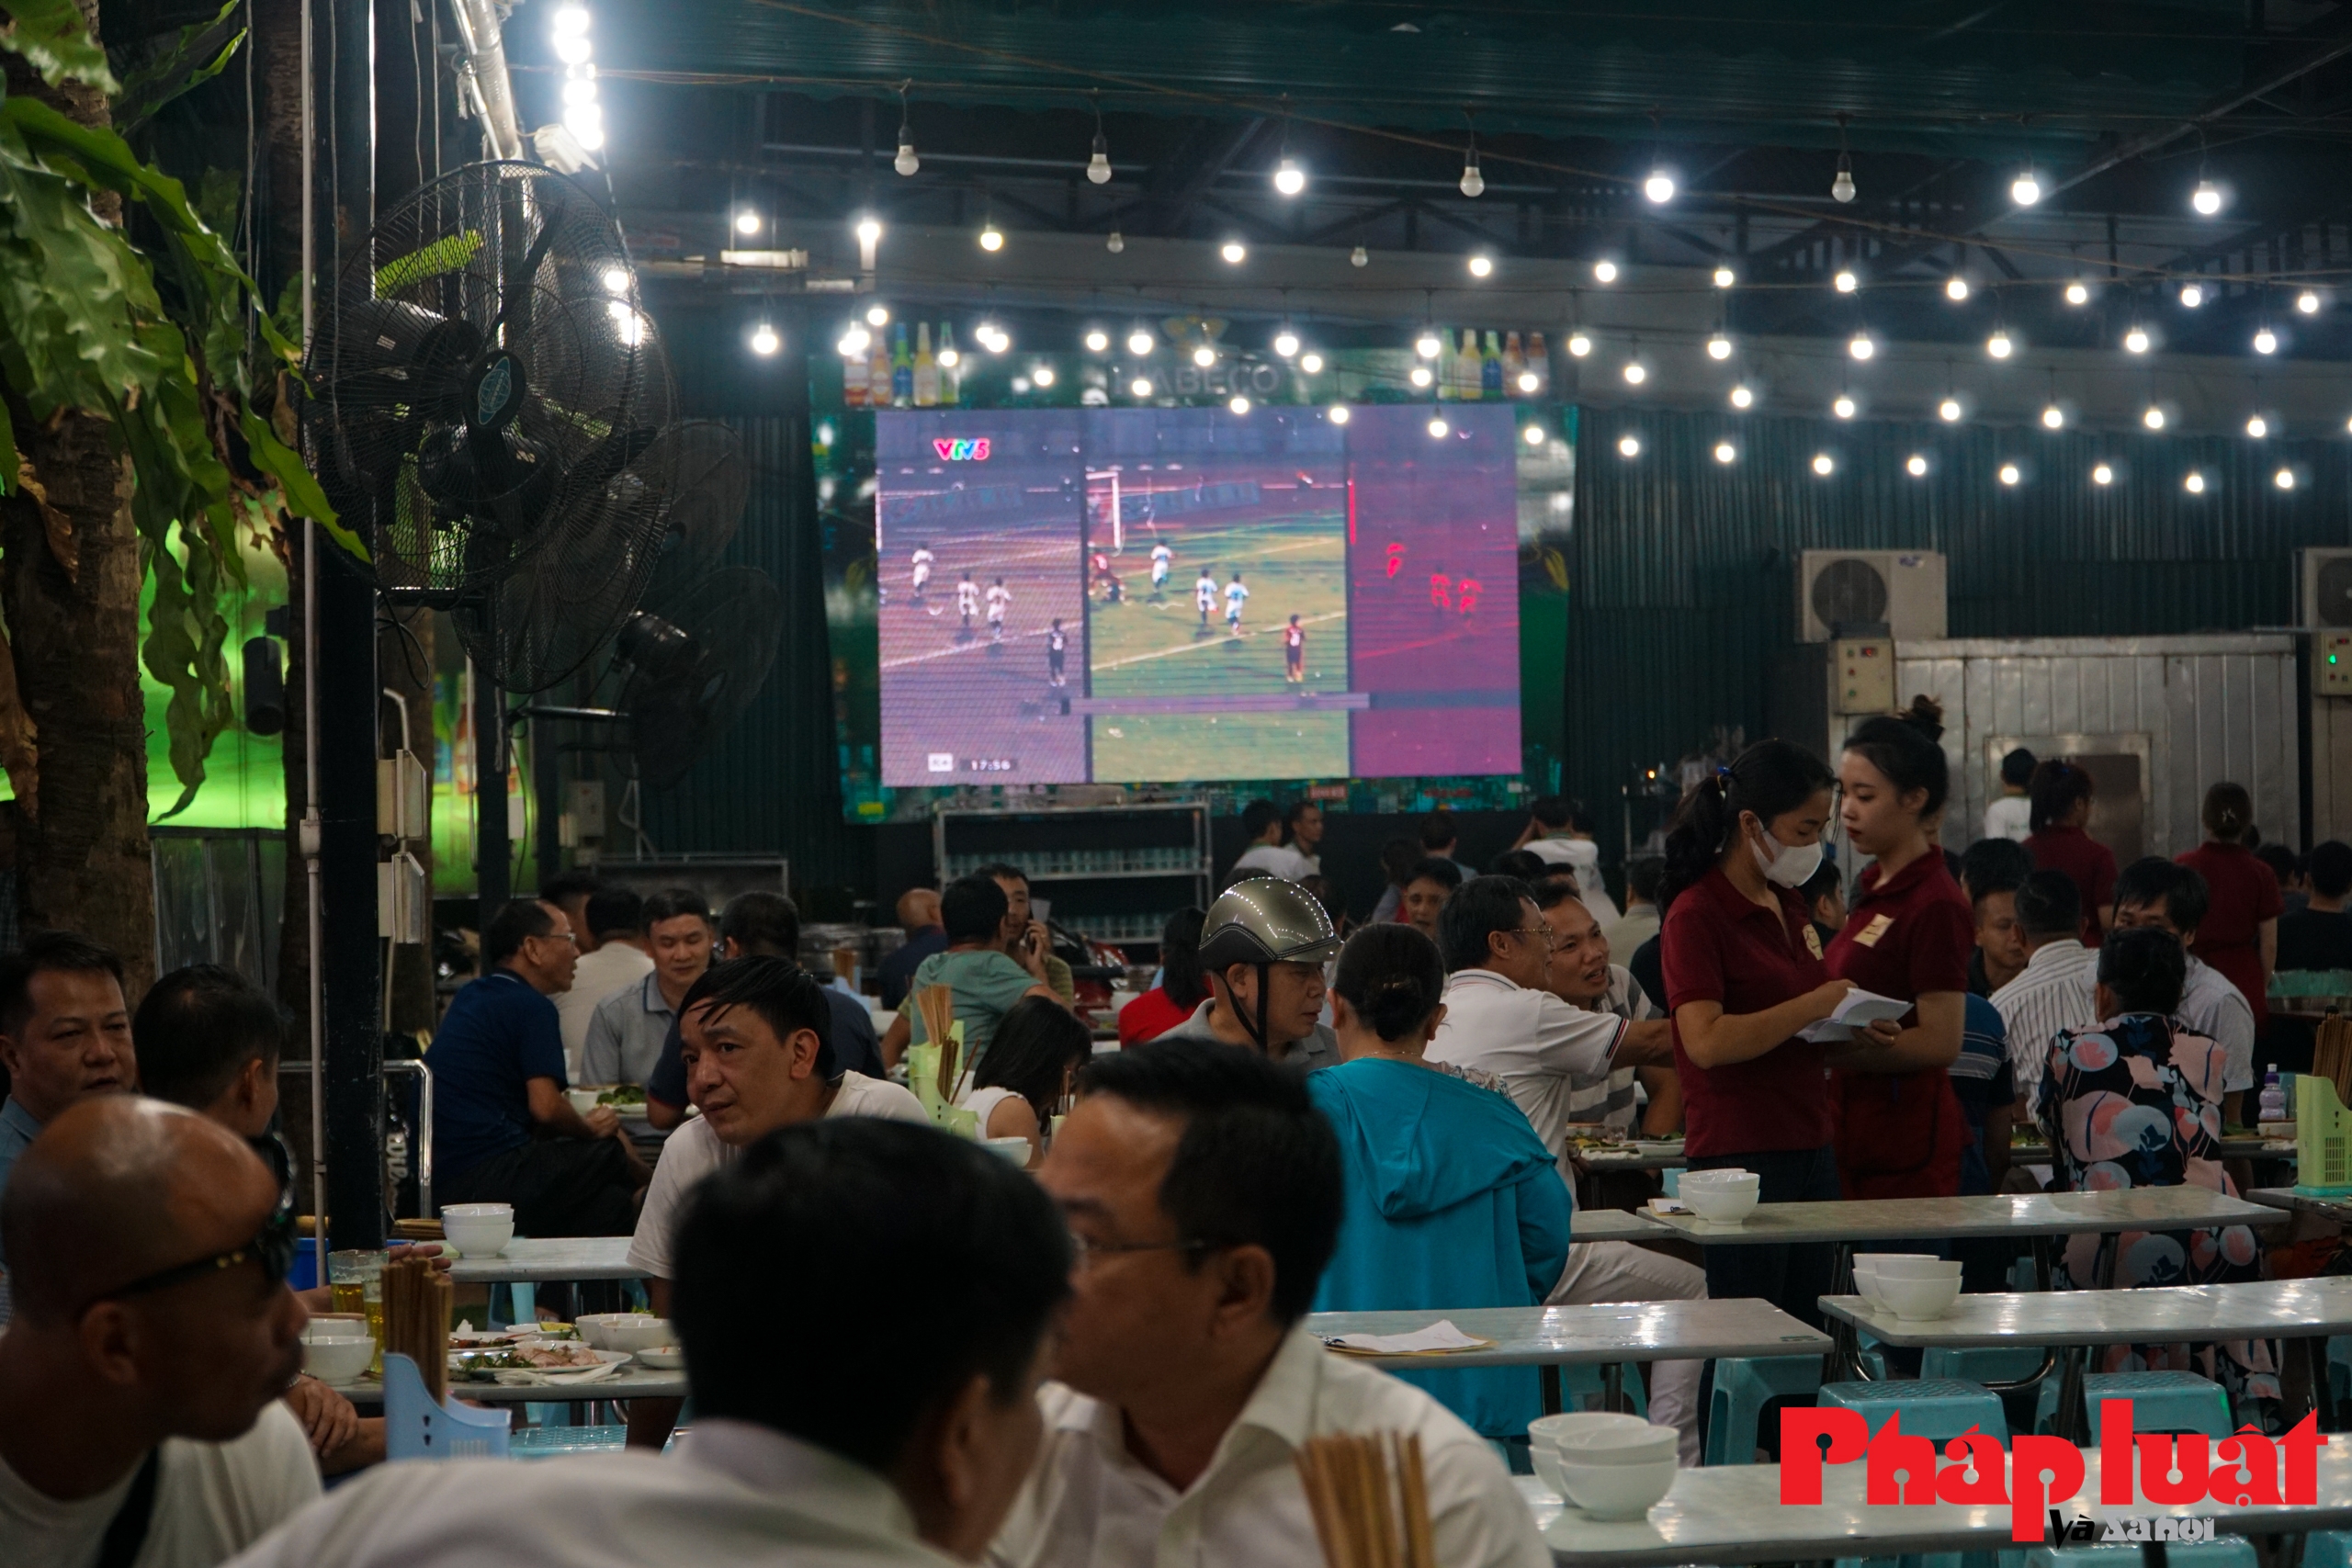 Sôi động mùa World Cup, TV giảm giá, màn hình lớn từ nhà hàng tới vỉa hè